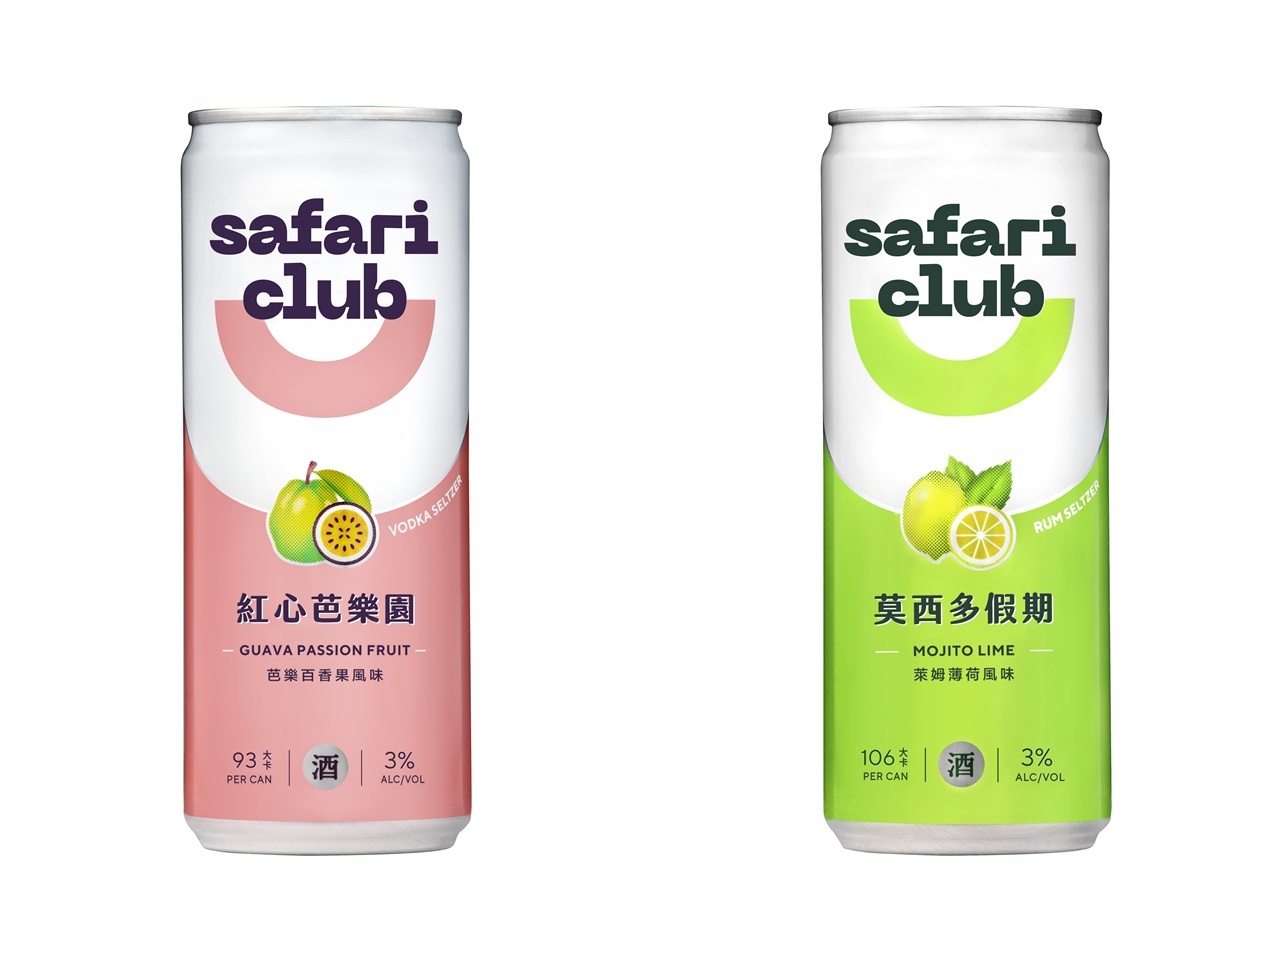 金車全新品牌Safari Club調酒